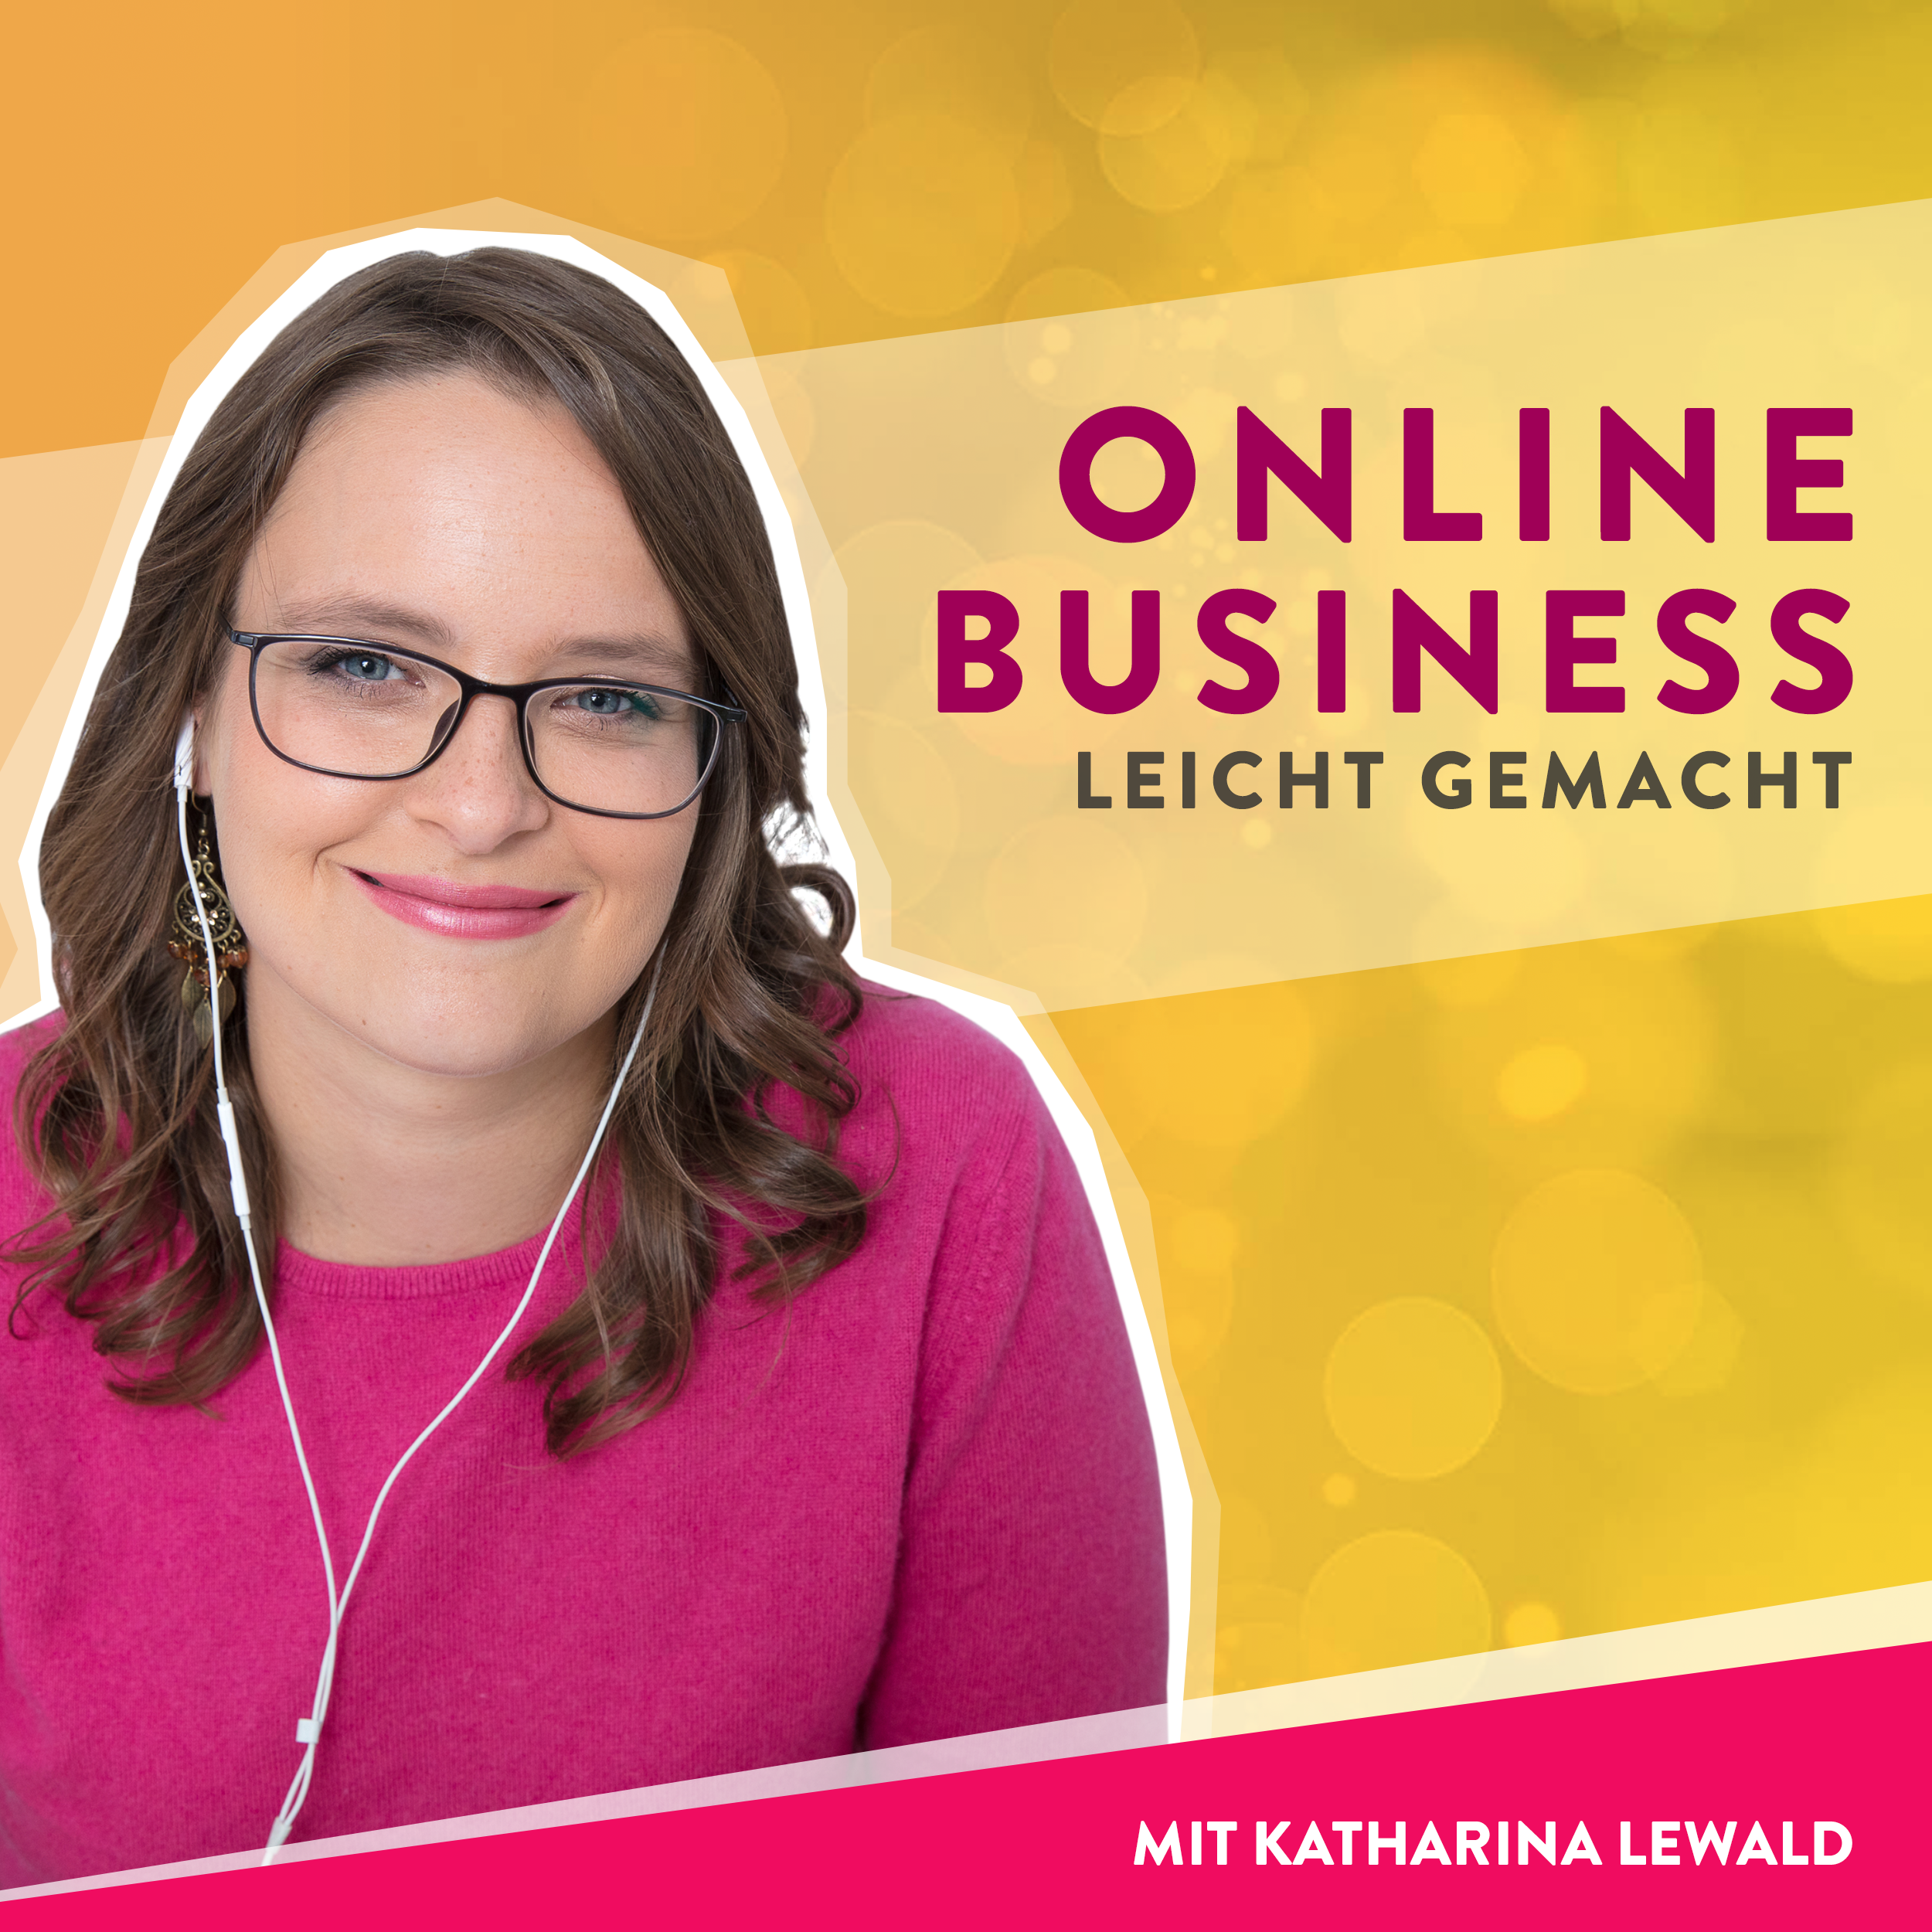 Steuer leicht gemacht im Online-Business mit Carina Heckmann